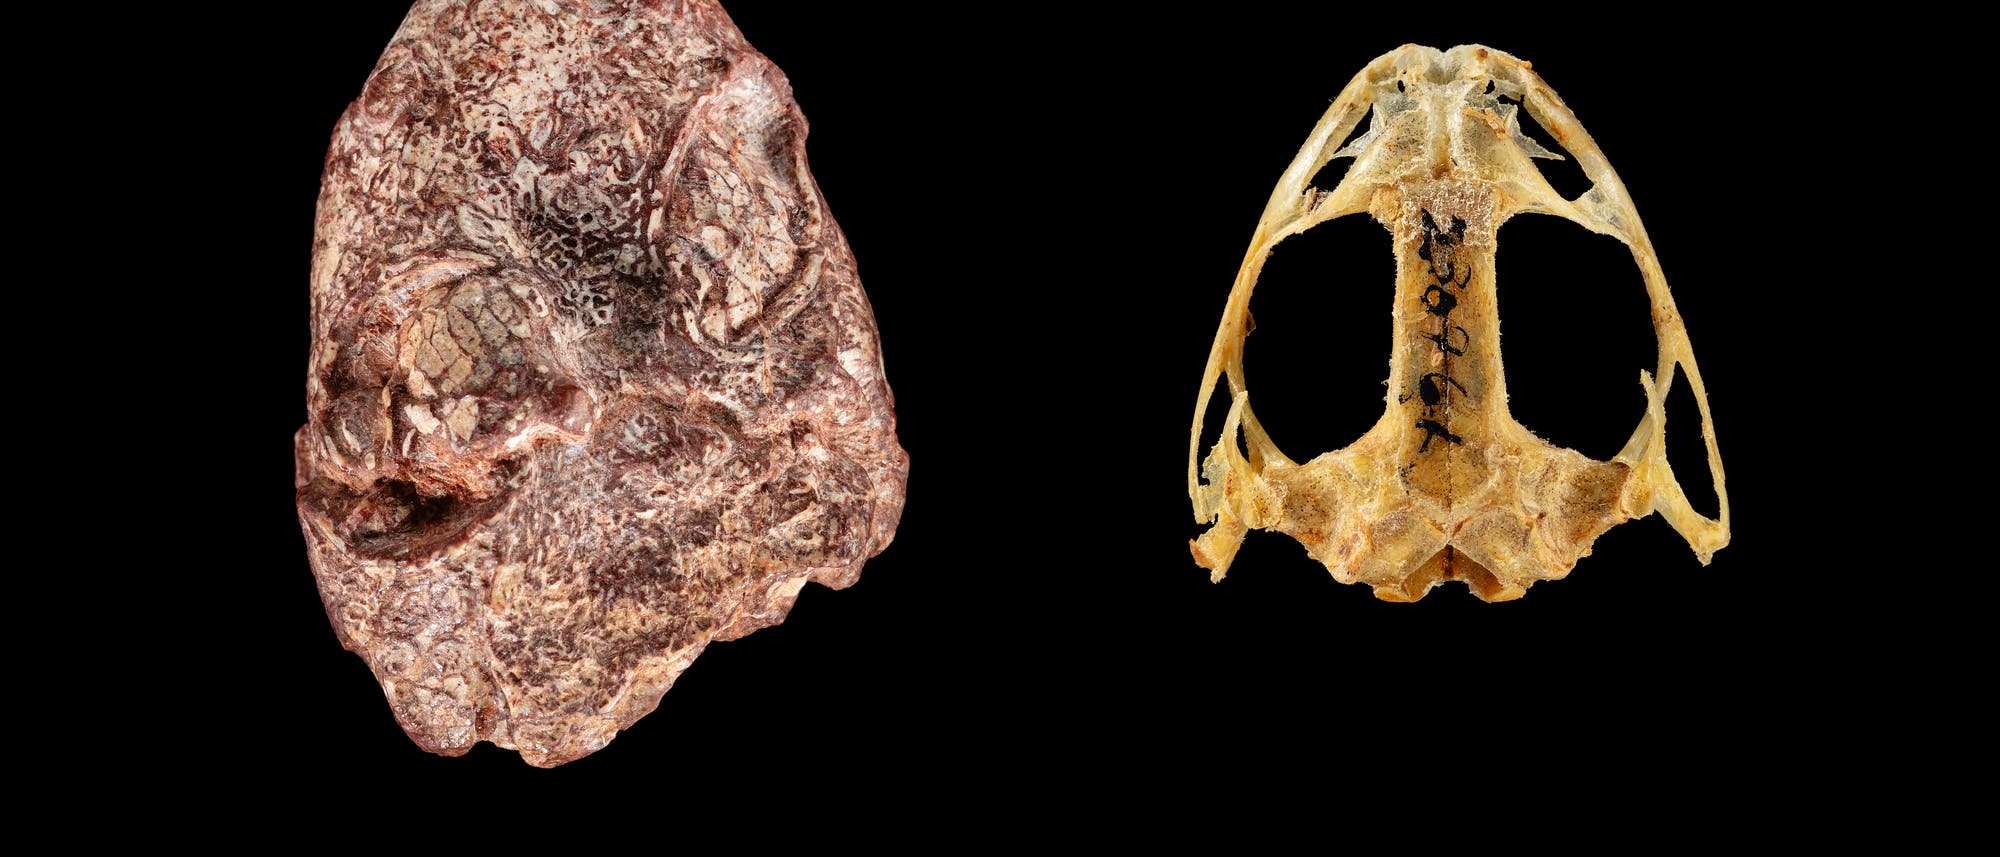 Versteinerter Schädel von Kermitops (links) und eines modernen Froschs der Art Lithobates palustris - beide vor schwarzem Hintergrund.